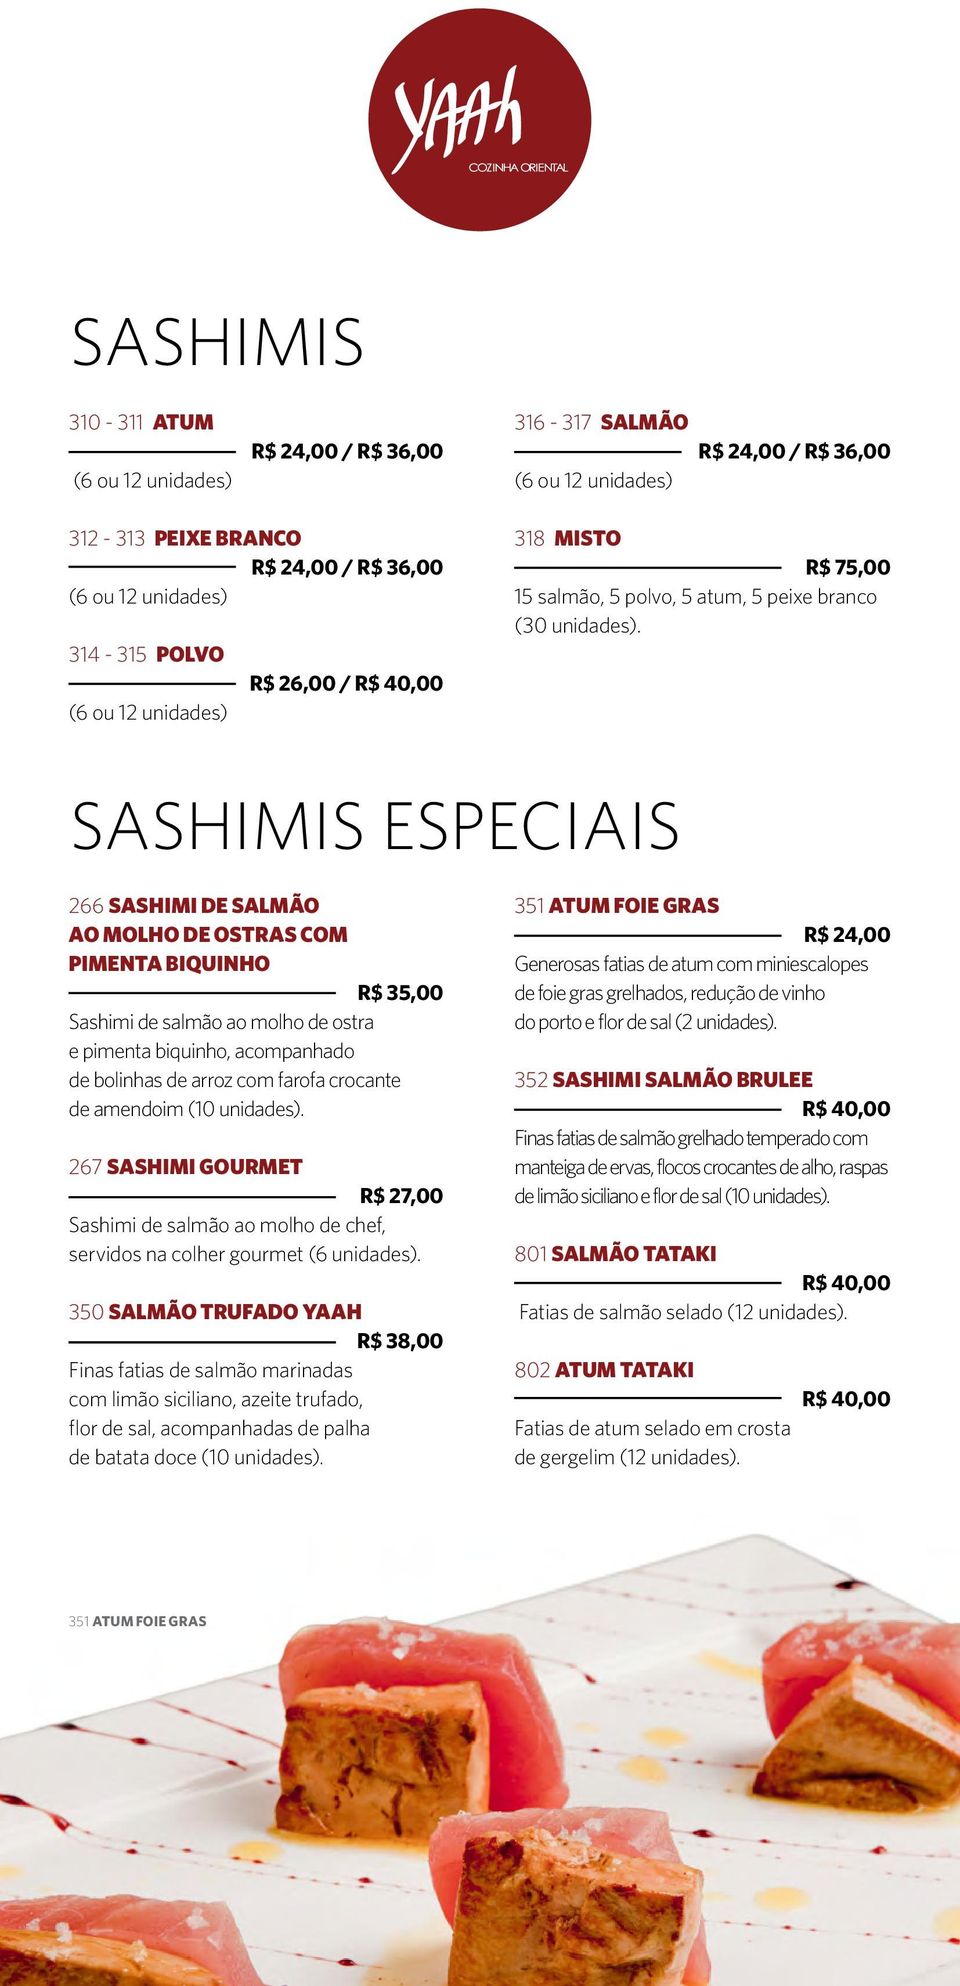 SASHIMIS ESPECIAIS 266 Sashimi de salmão ao Molho de Ostras com Pimenta Biquinho R$ 35,00 Sashimi de salmão ao molho de ostra e pimenta biquinho, acompanhado de bolinhas de arroz com farofa crocante